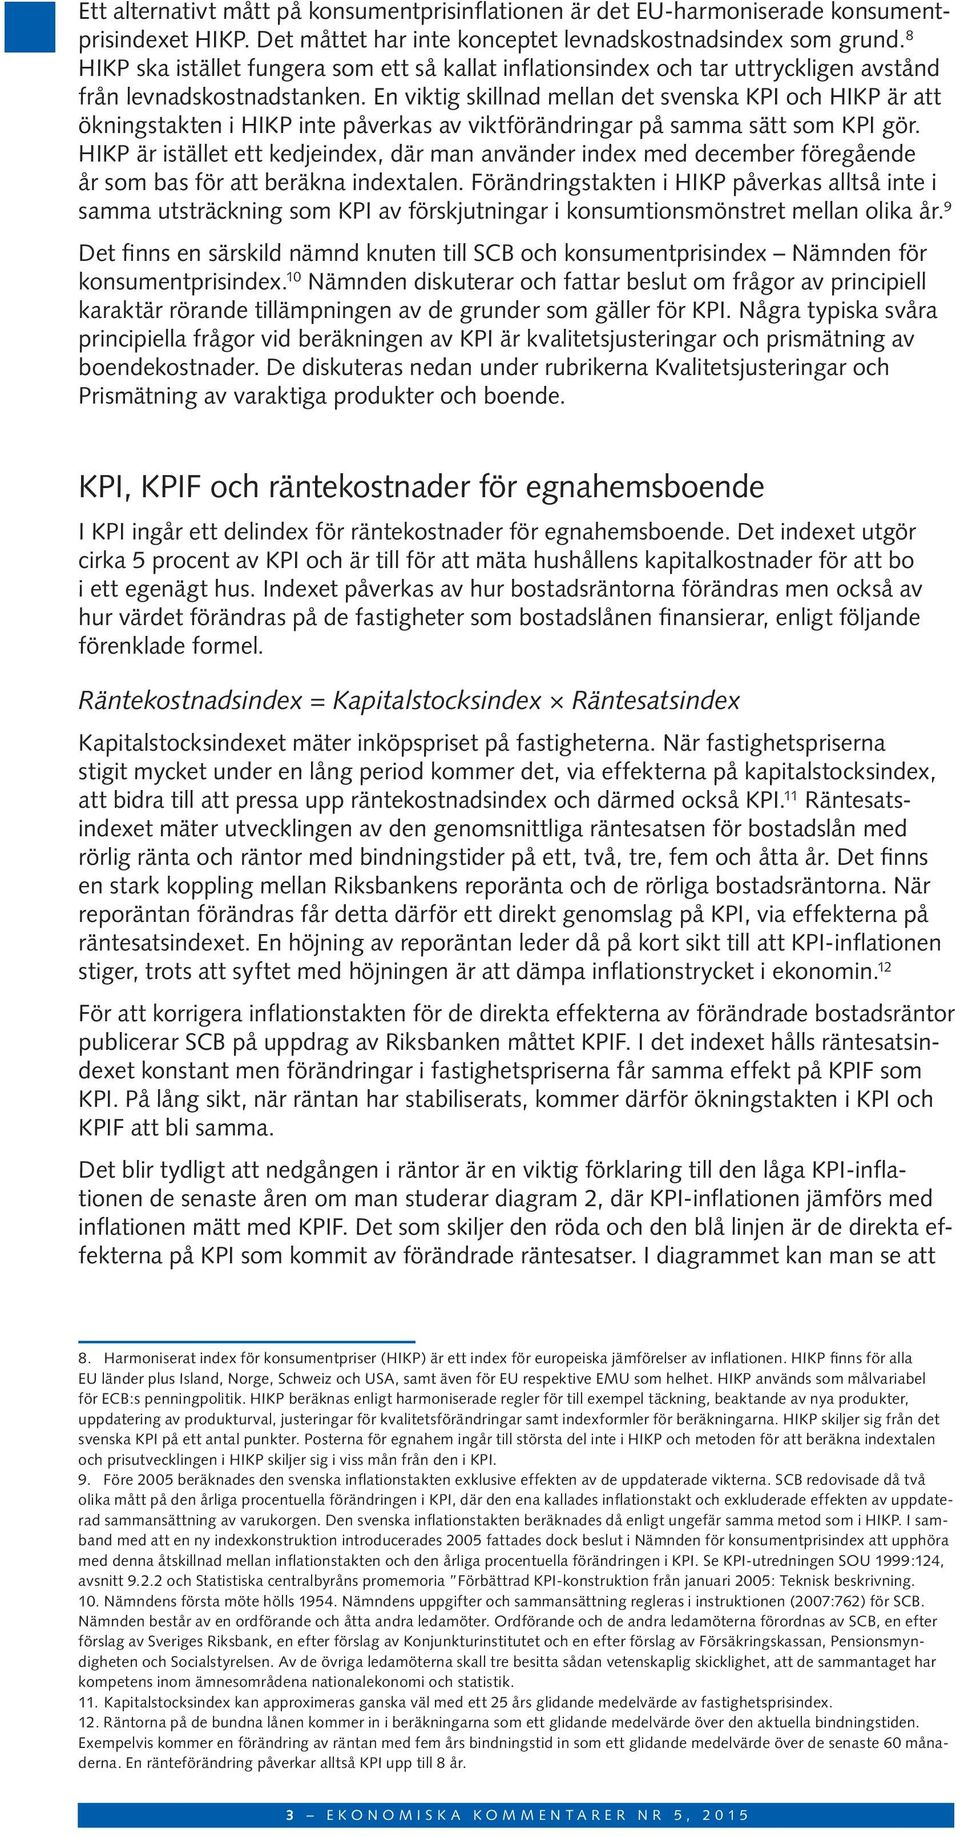 En viktig skillnad mellan det svenska KPI och HIKP är att ökningstakten i HIKP inte påverkas av viktförändringar på samma sätt som KPI gör.